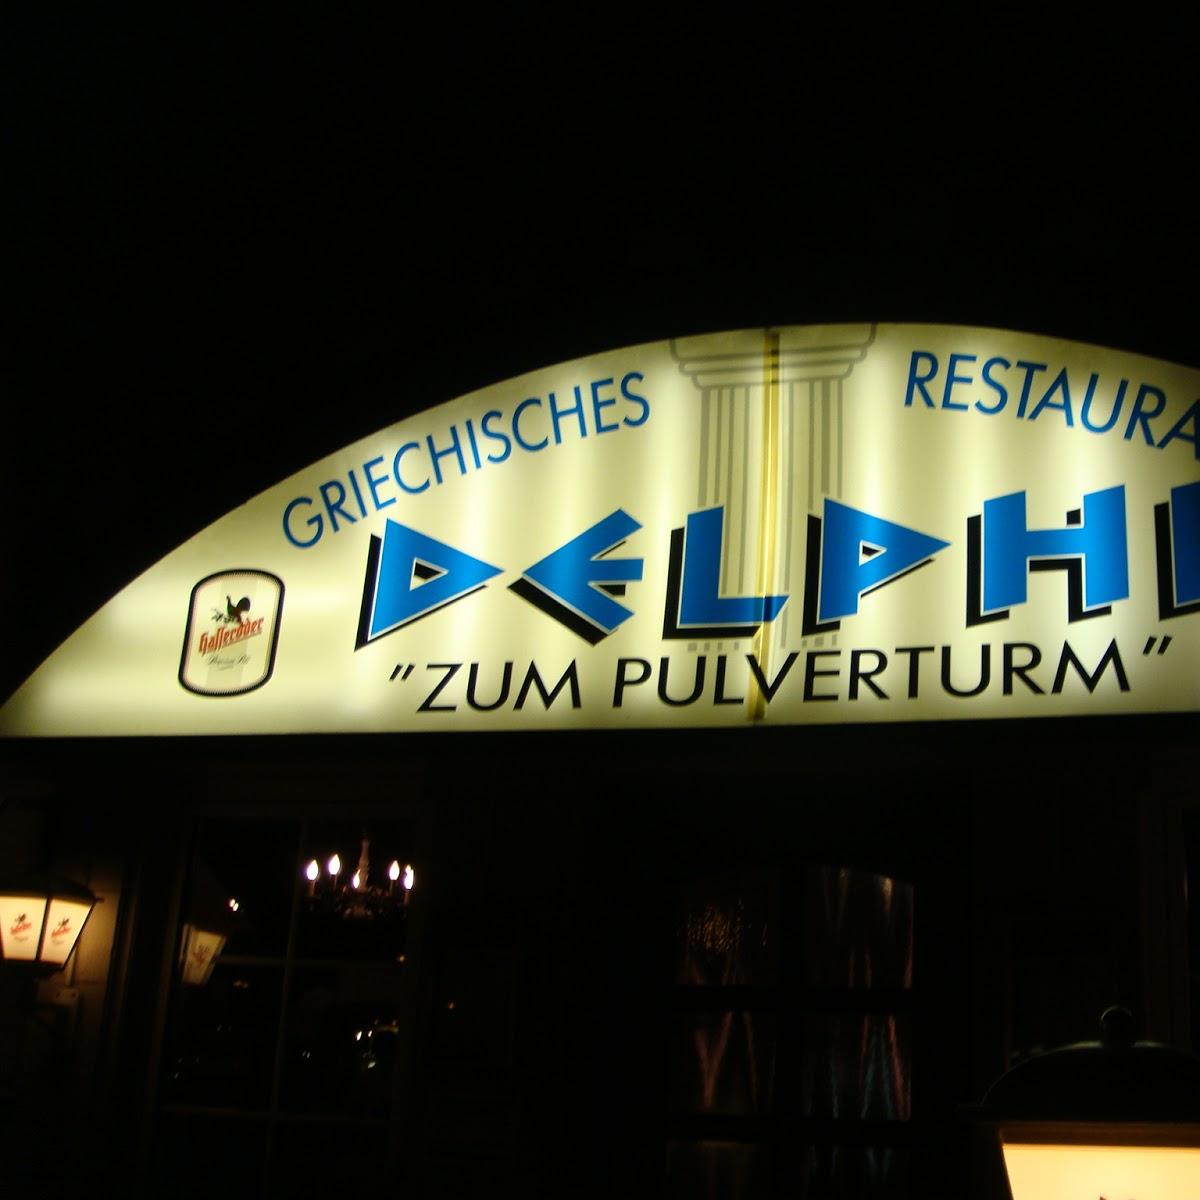 Restaurant "Delphi - Döhren" in Hannover